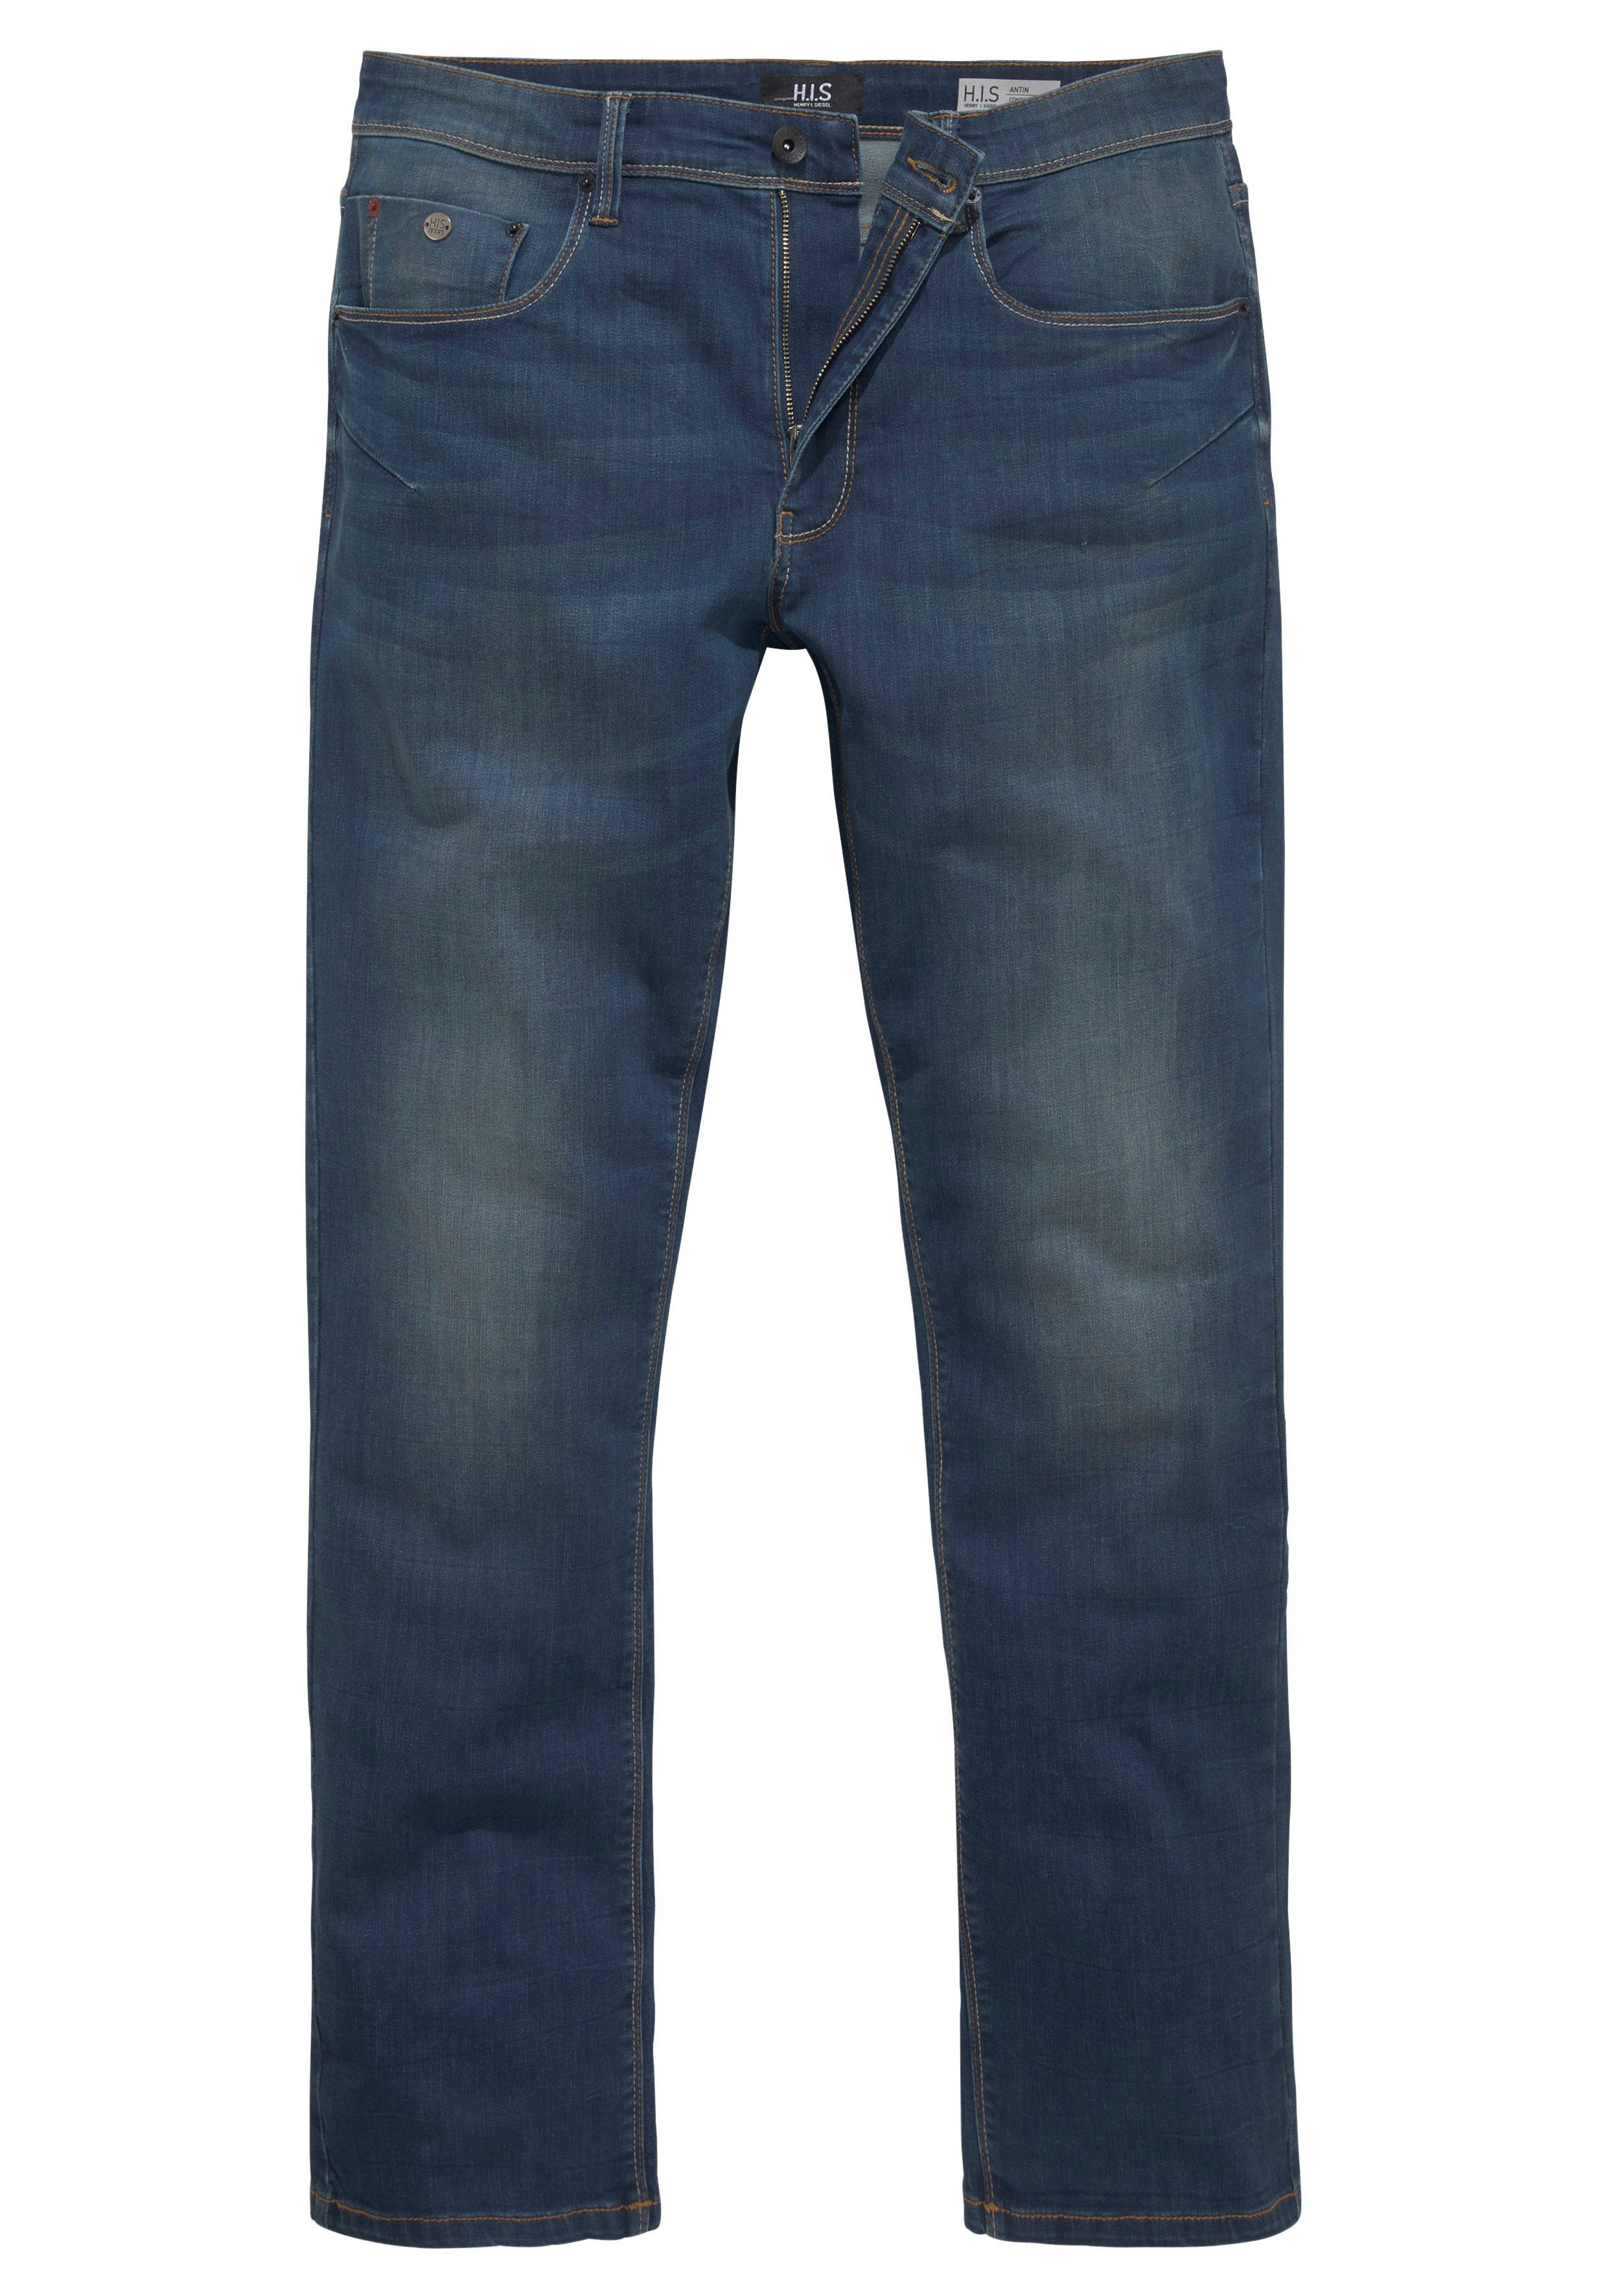 H.I.S wassersparende Wash Ökologische, Comfort-fit-Jeans ANTIN Produktion Ozon dark-blue-used durch